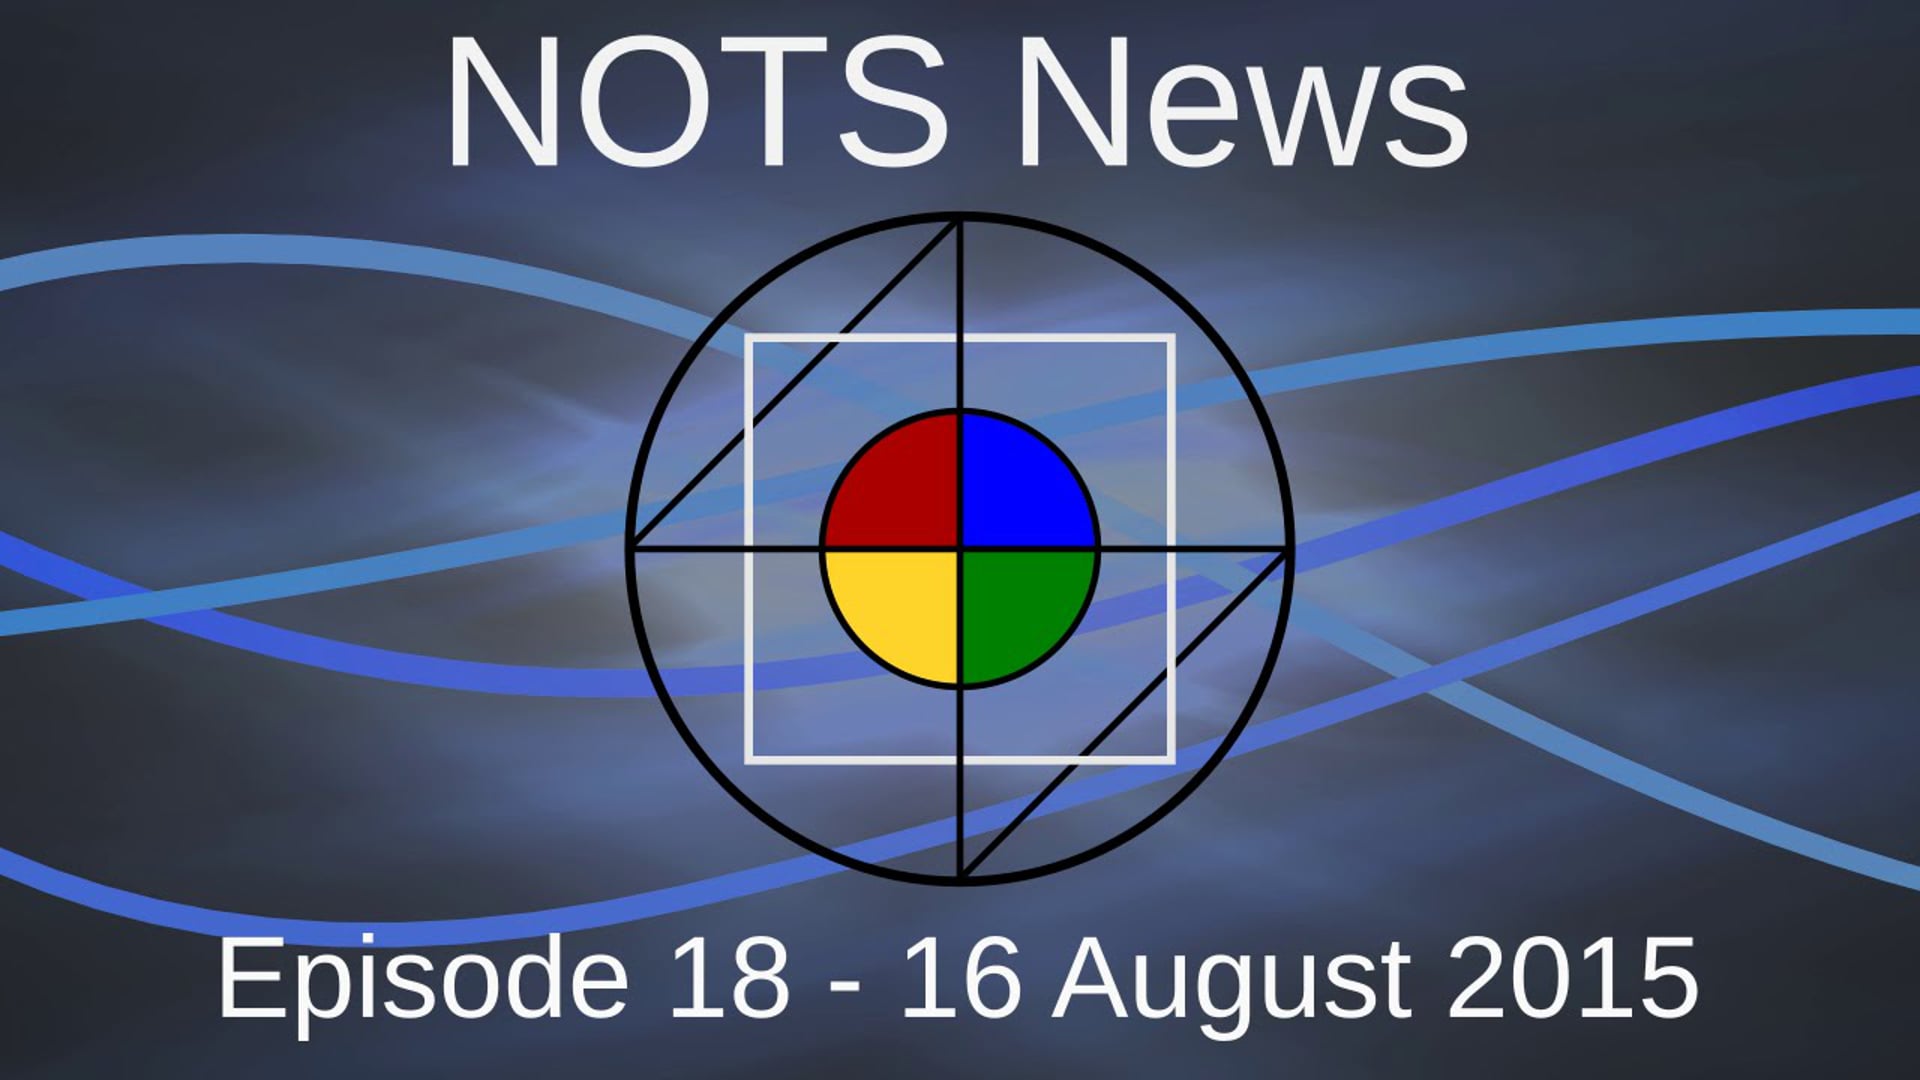 16 August 2015 - NOTS News